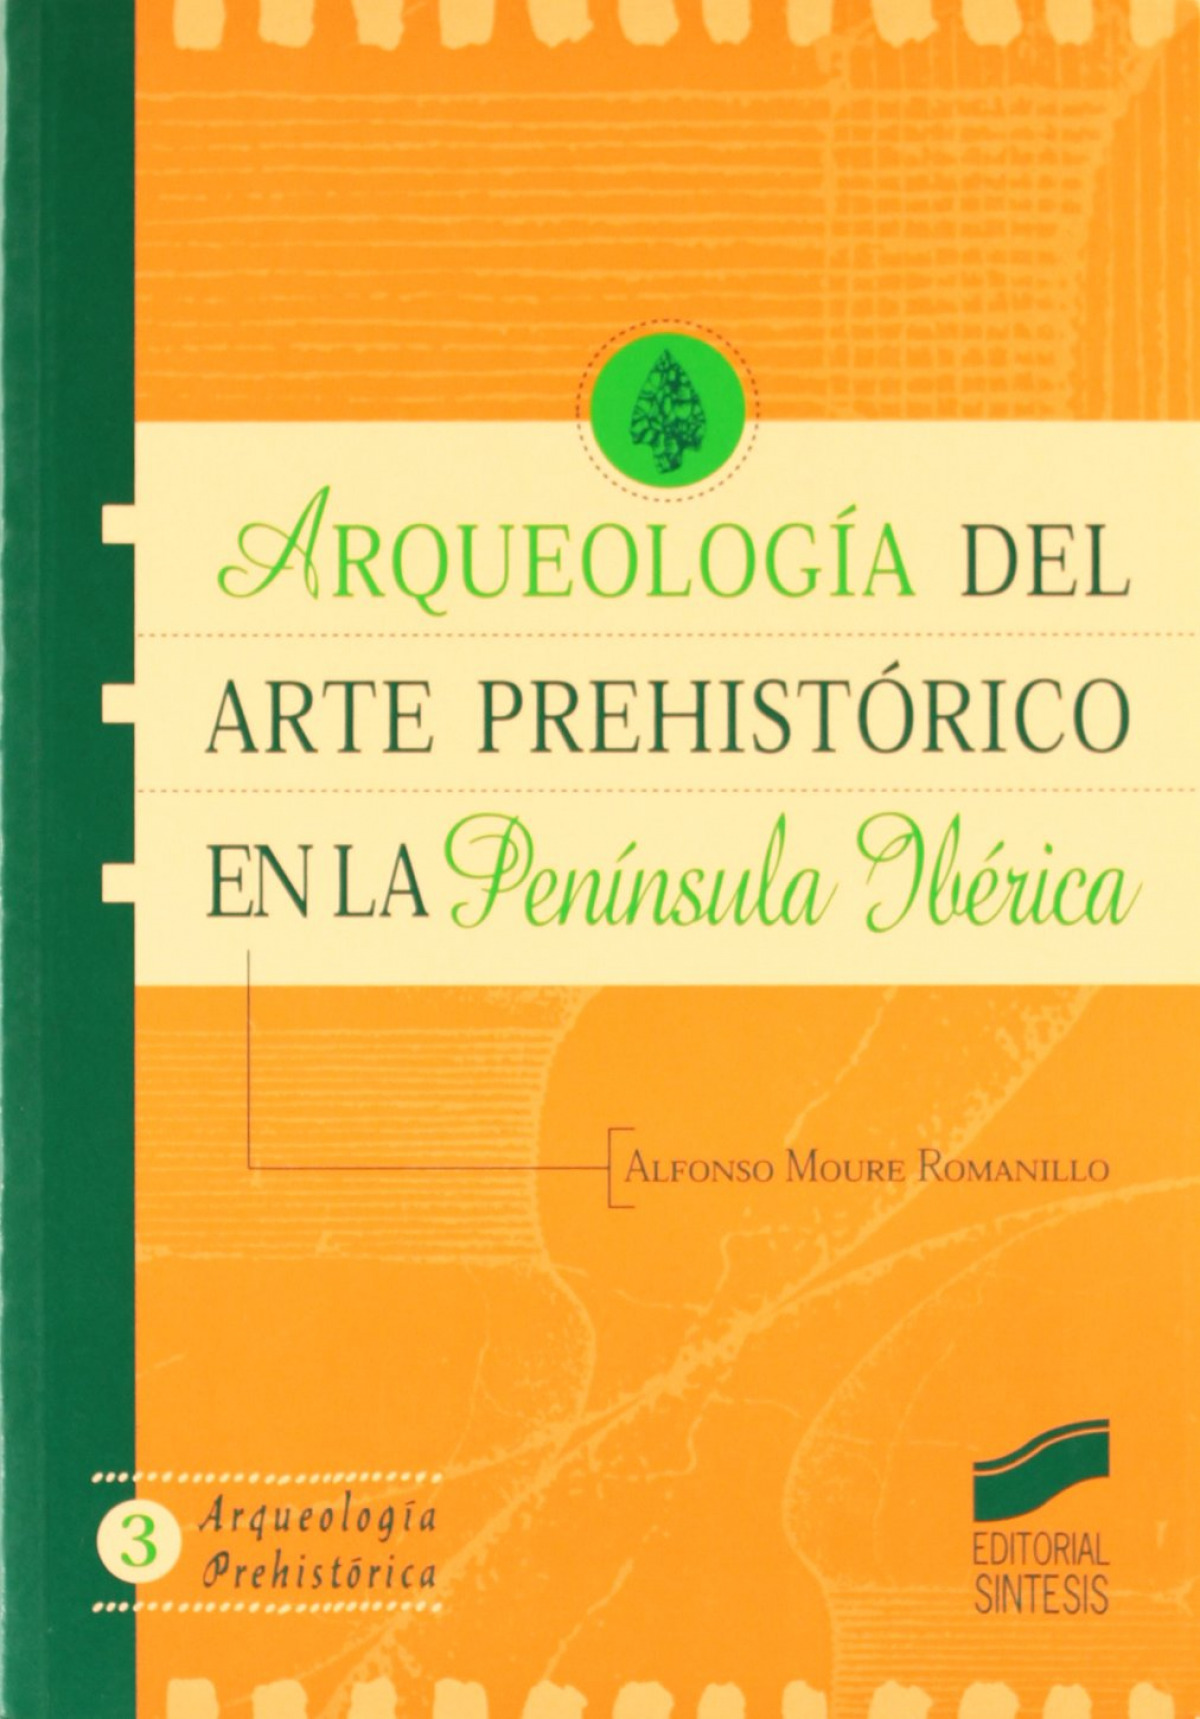 Arqueología del arte prehistórico en la península ibérica - Moure Romanillo, Alfonso